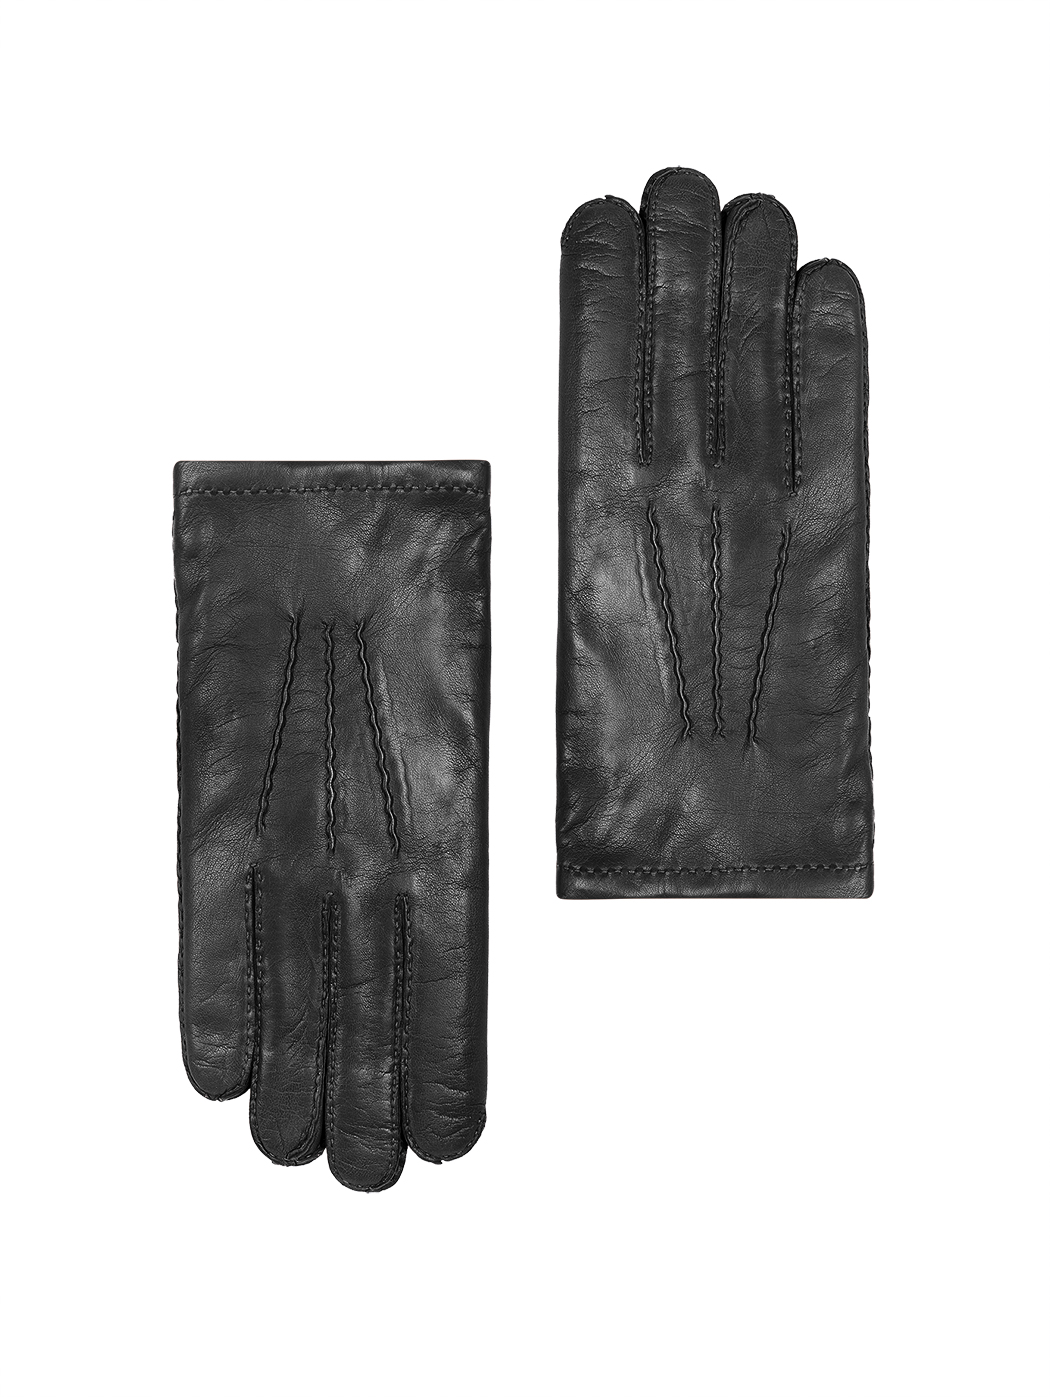 Мужские кожаные перчатки с кашемировым подкладом черного цвета